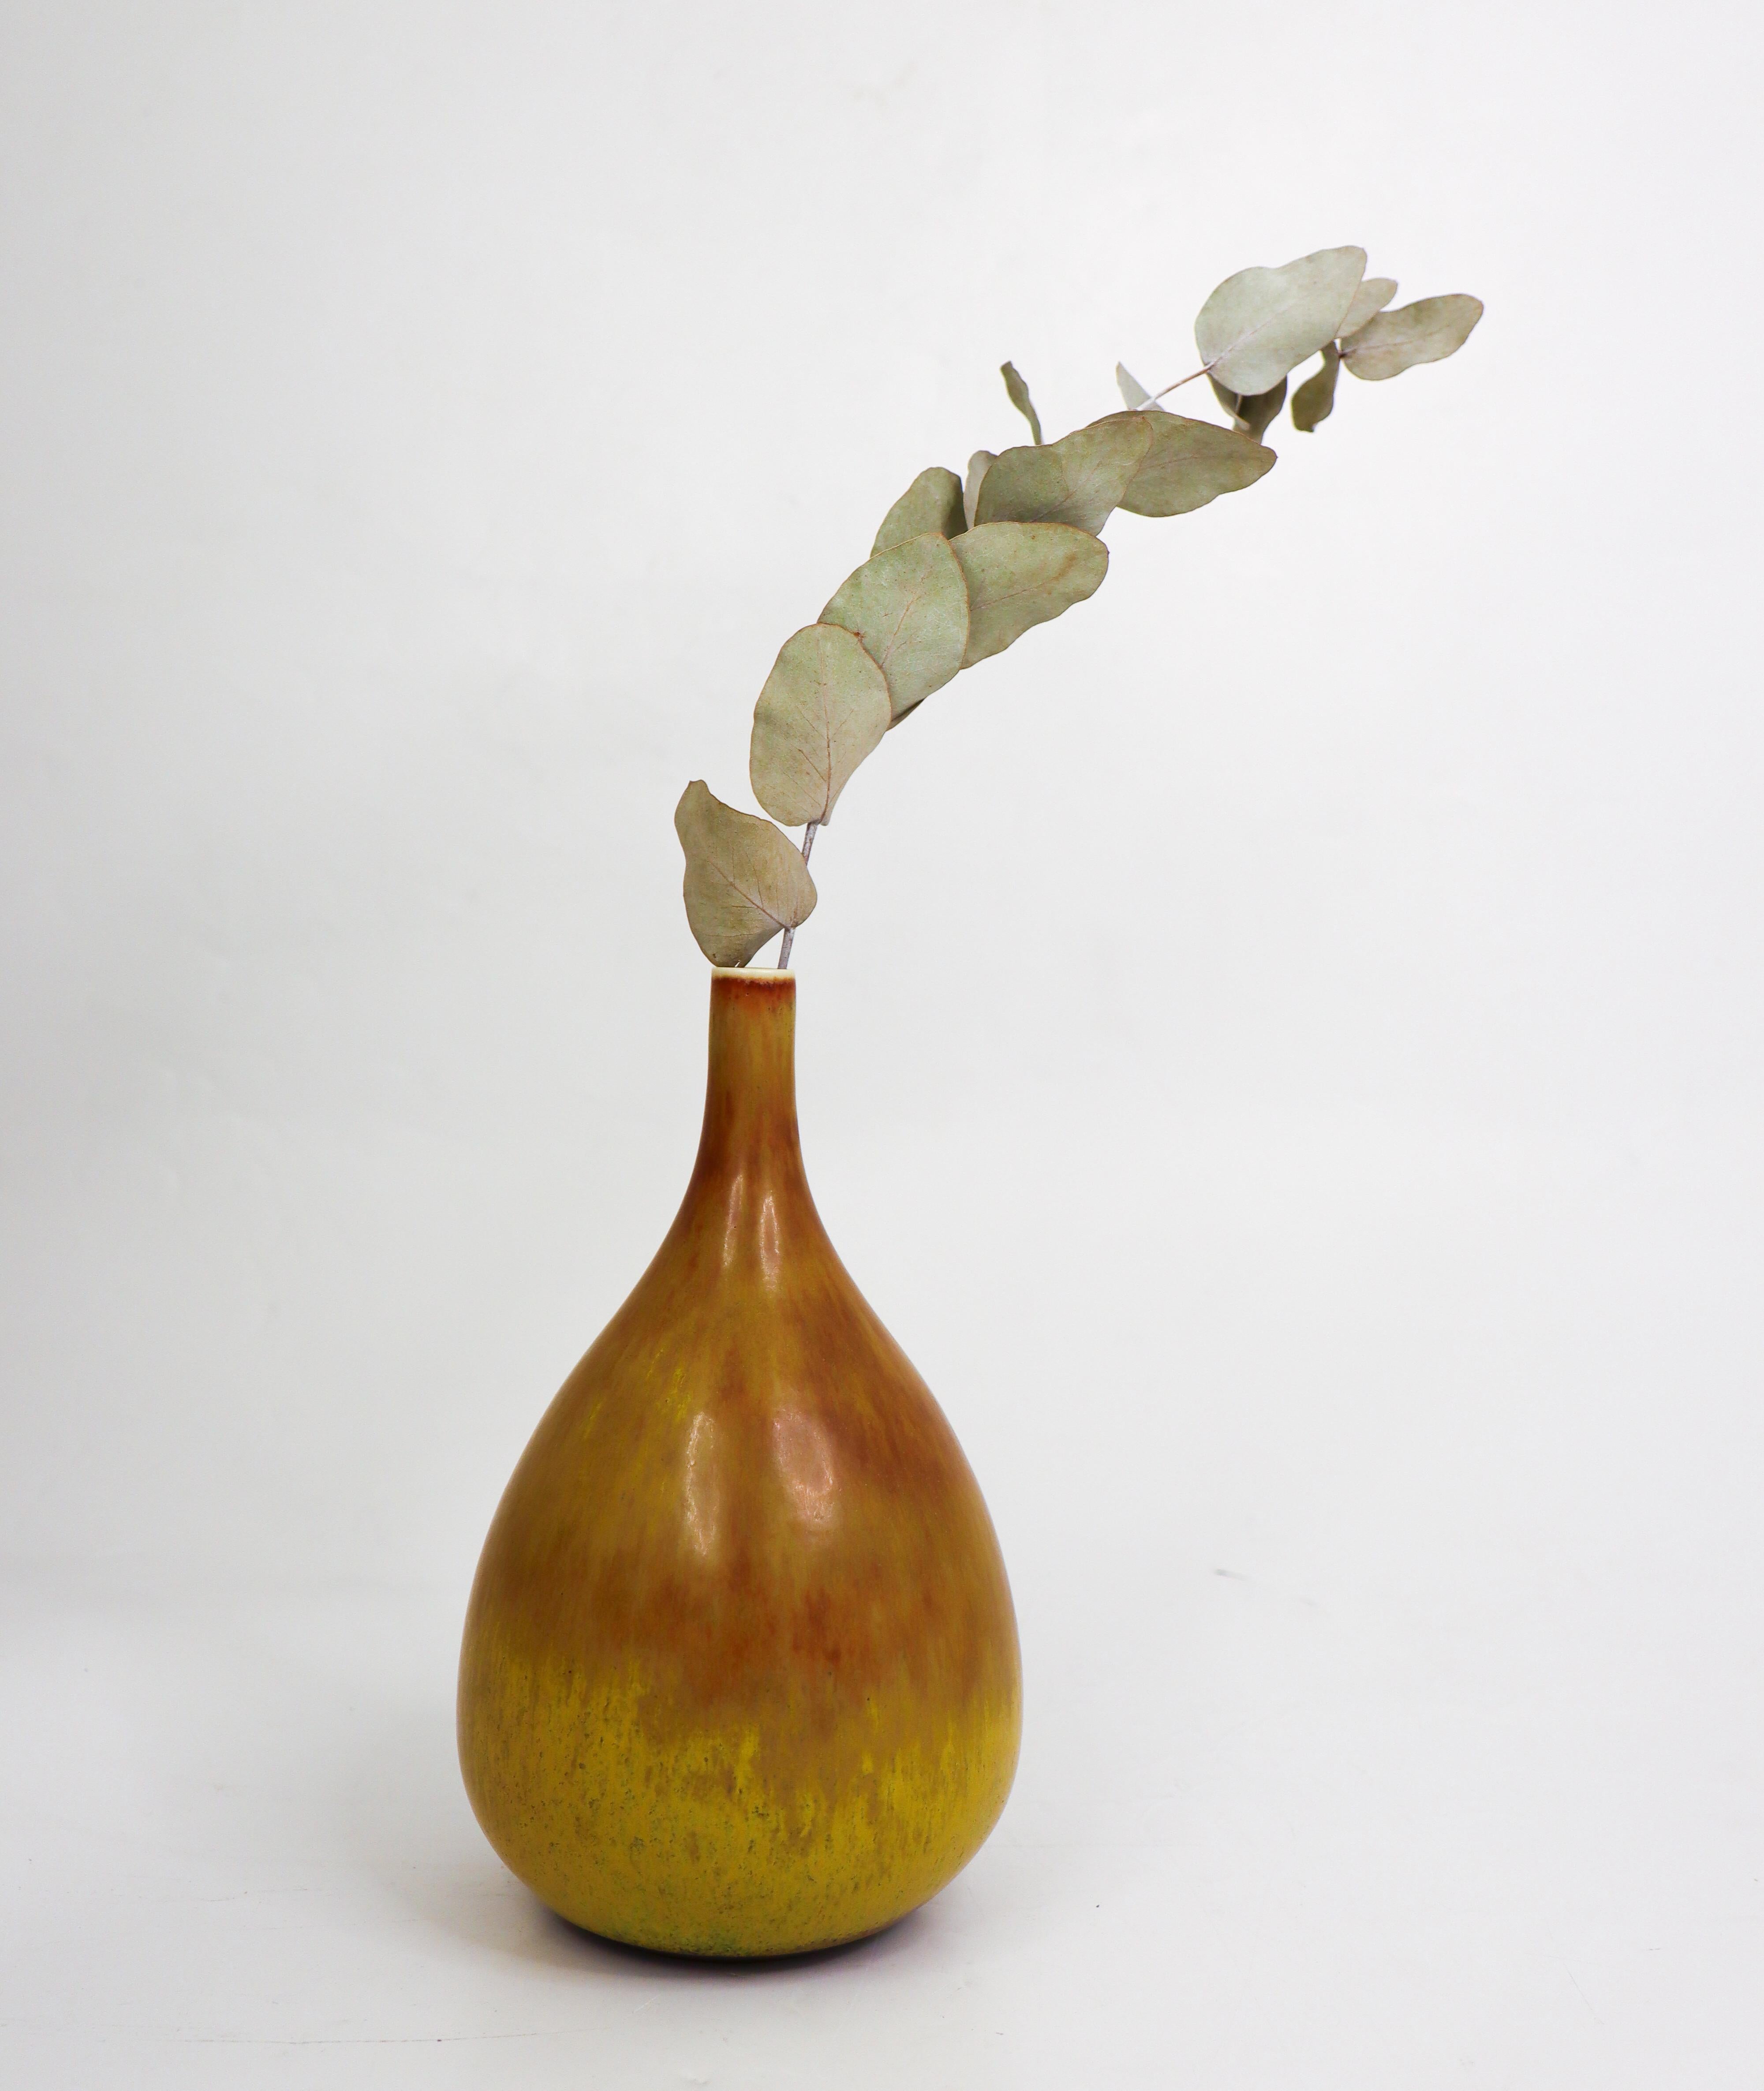 Un vase unique, brun et jaune, conçu par Carl-Harry Stålhane chez Rörstrand. Le vase mesure 19 cm de haut et est en excellent état. Le vase est unique et signé, comme tous ses vases uniques, avec la signature complète. 

Carl-Harry Stålhane est l'un